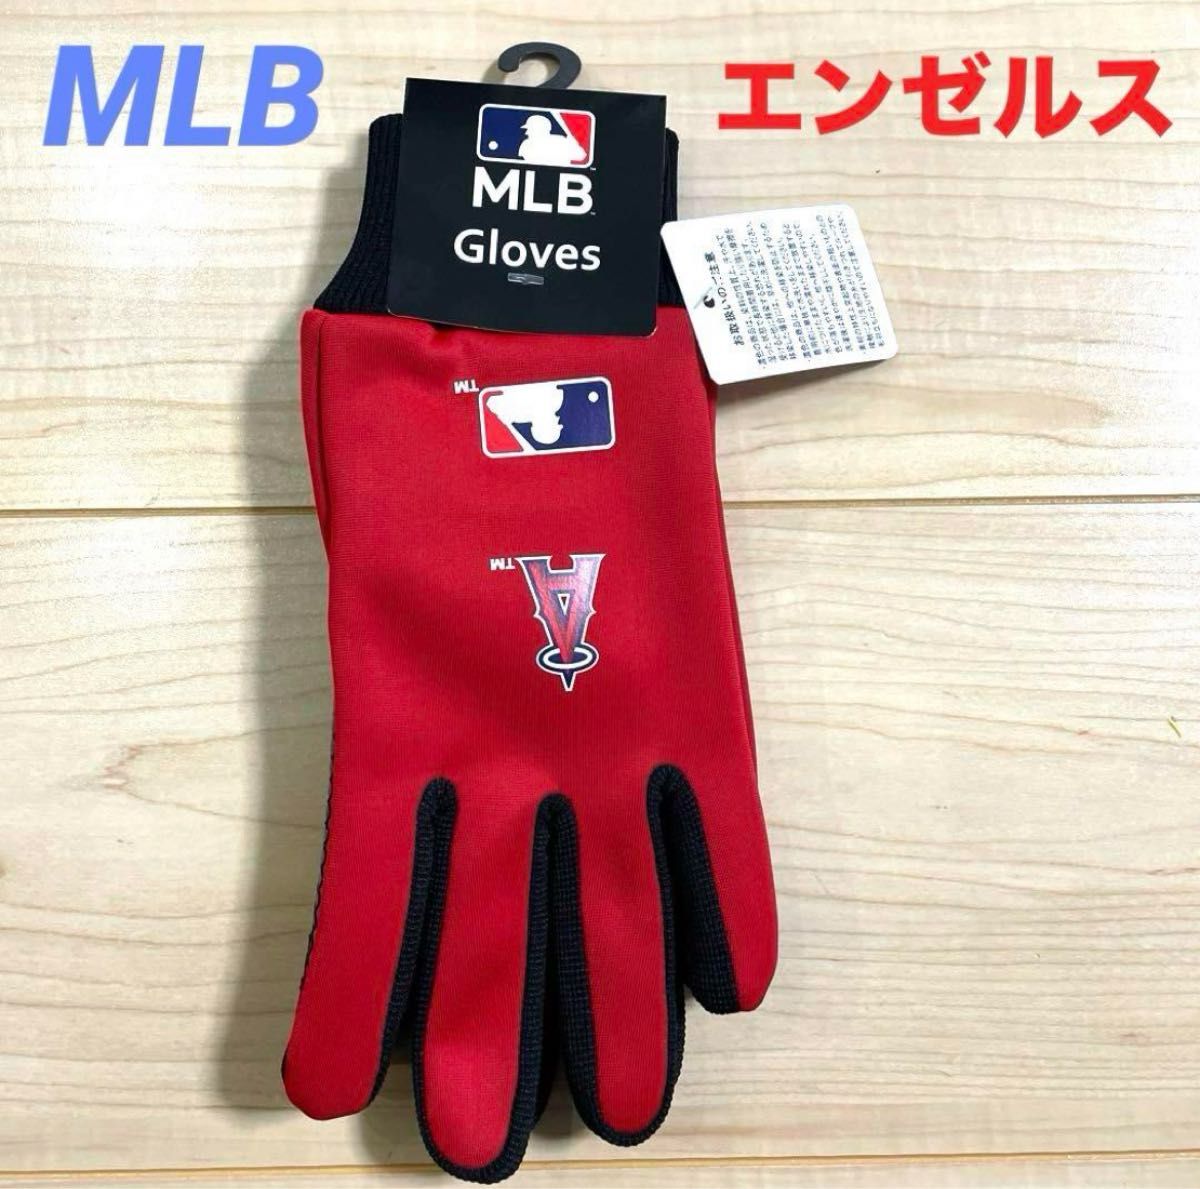 【新品】MLB エンゼルス 手袋 すべり止めつき スマホ操作可能 レッド